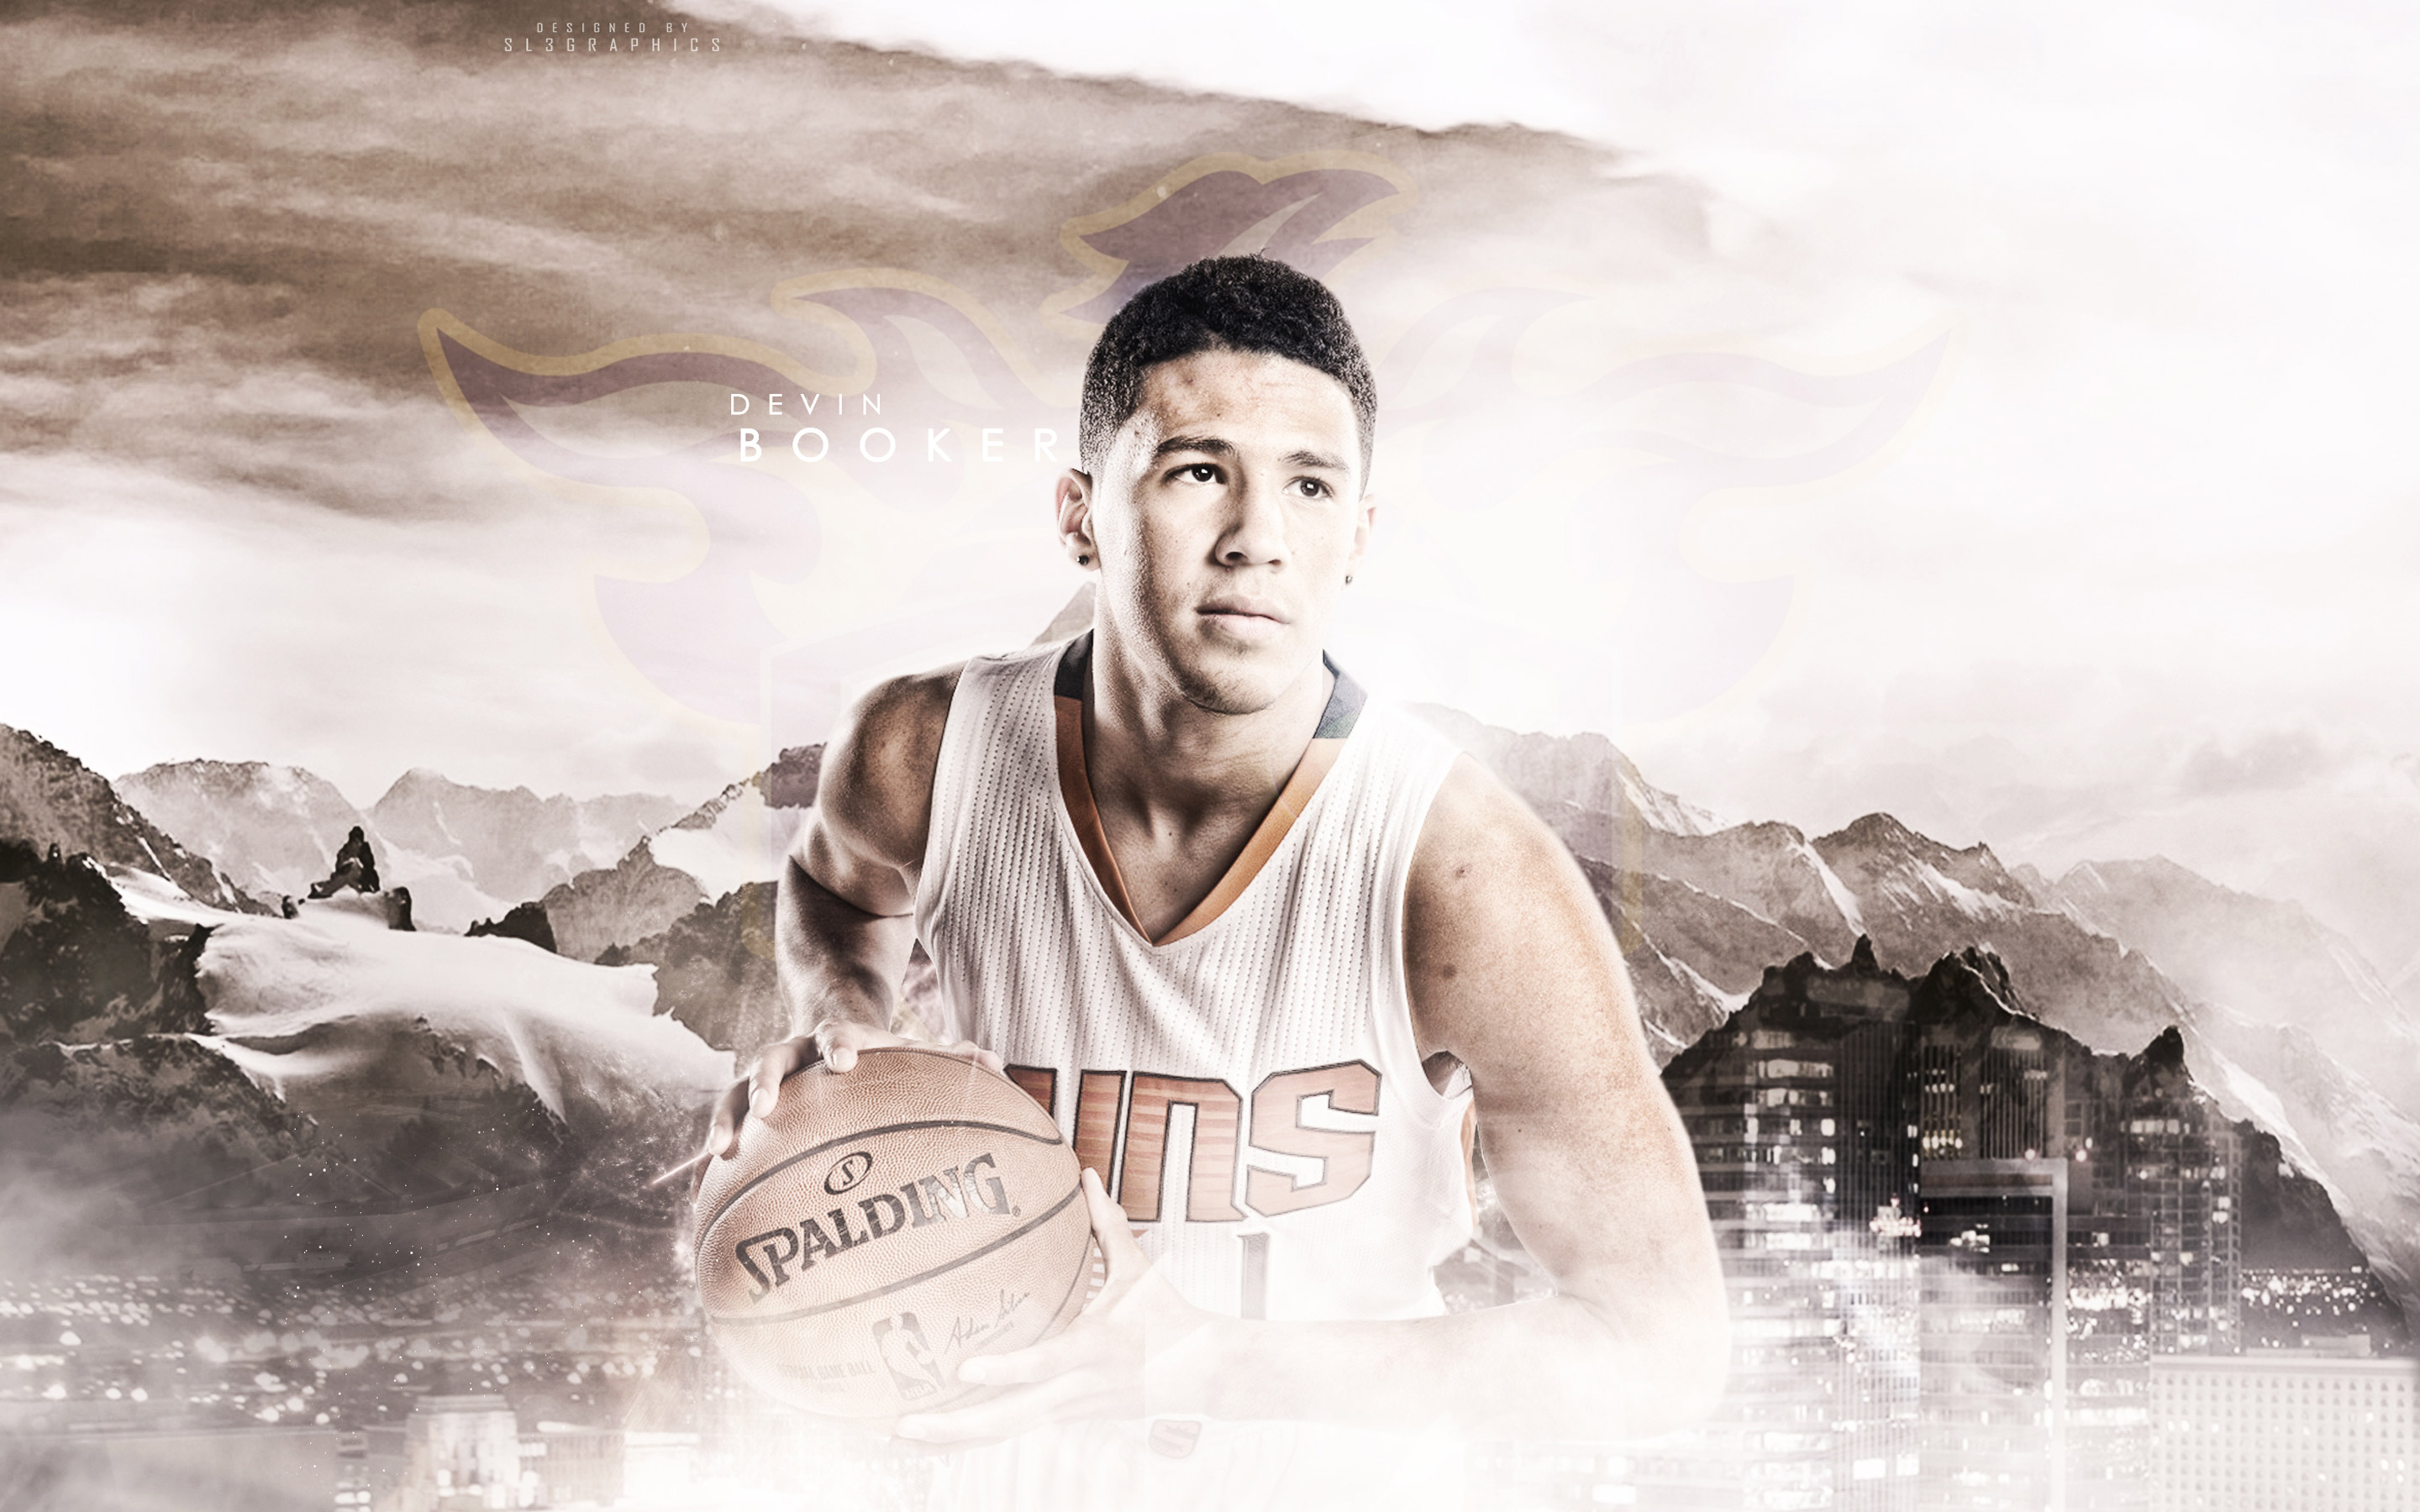 Devin Booker 2015 Phoenix Suns Wallpaper Basketball Wallpapers at